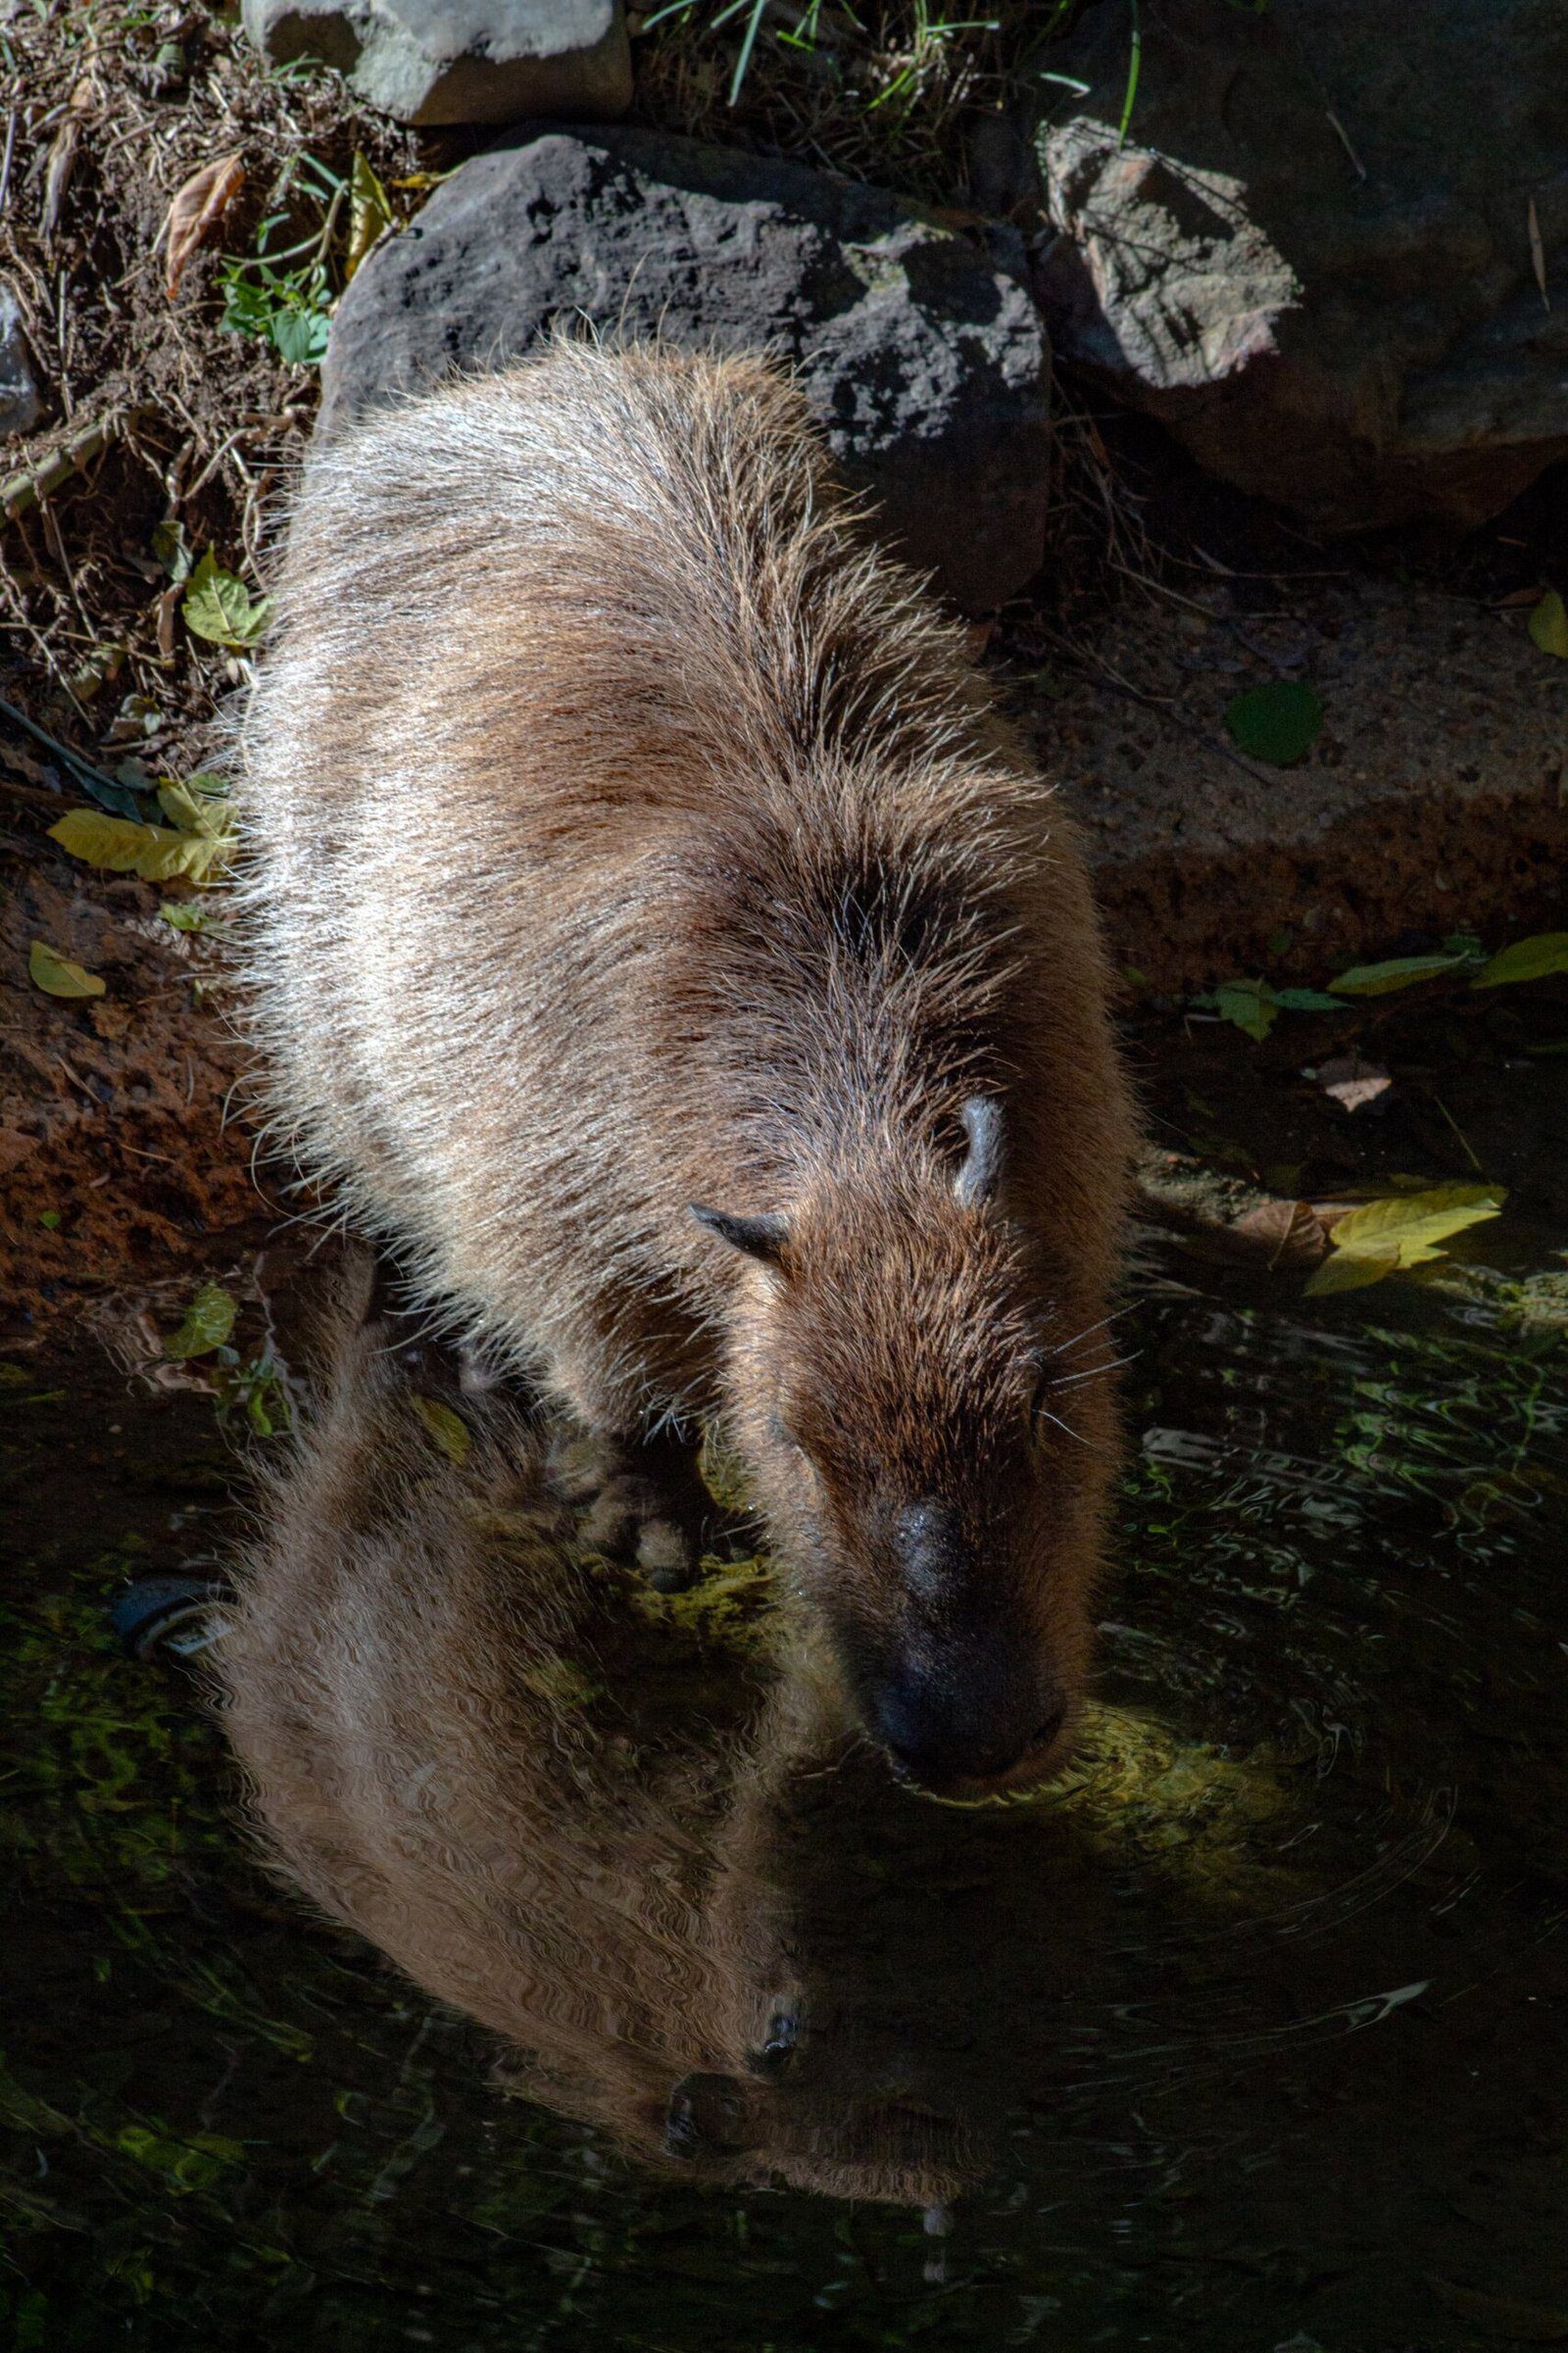 Exploring the North Georgia Zoo: Encounter with Capybaras